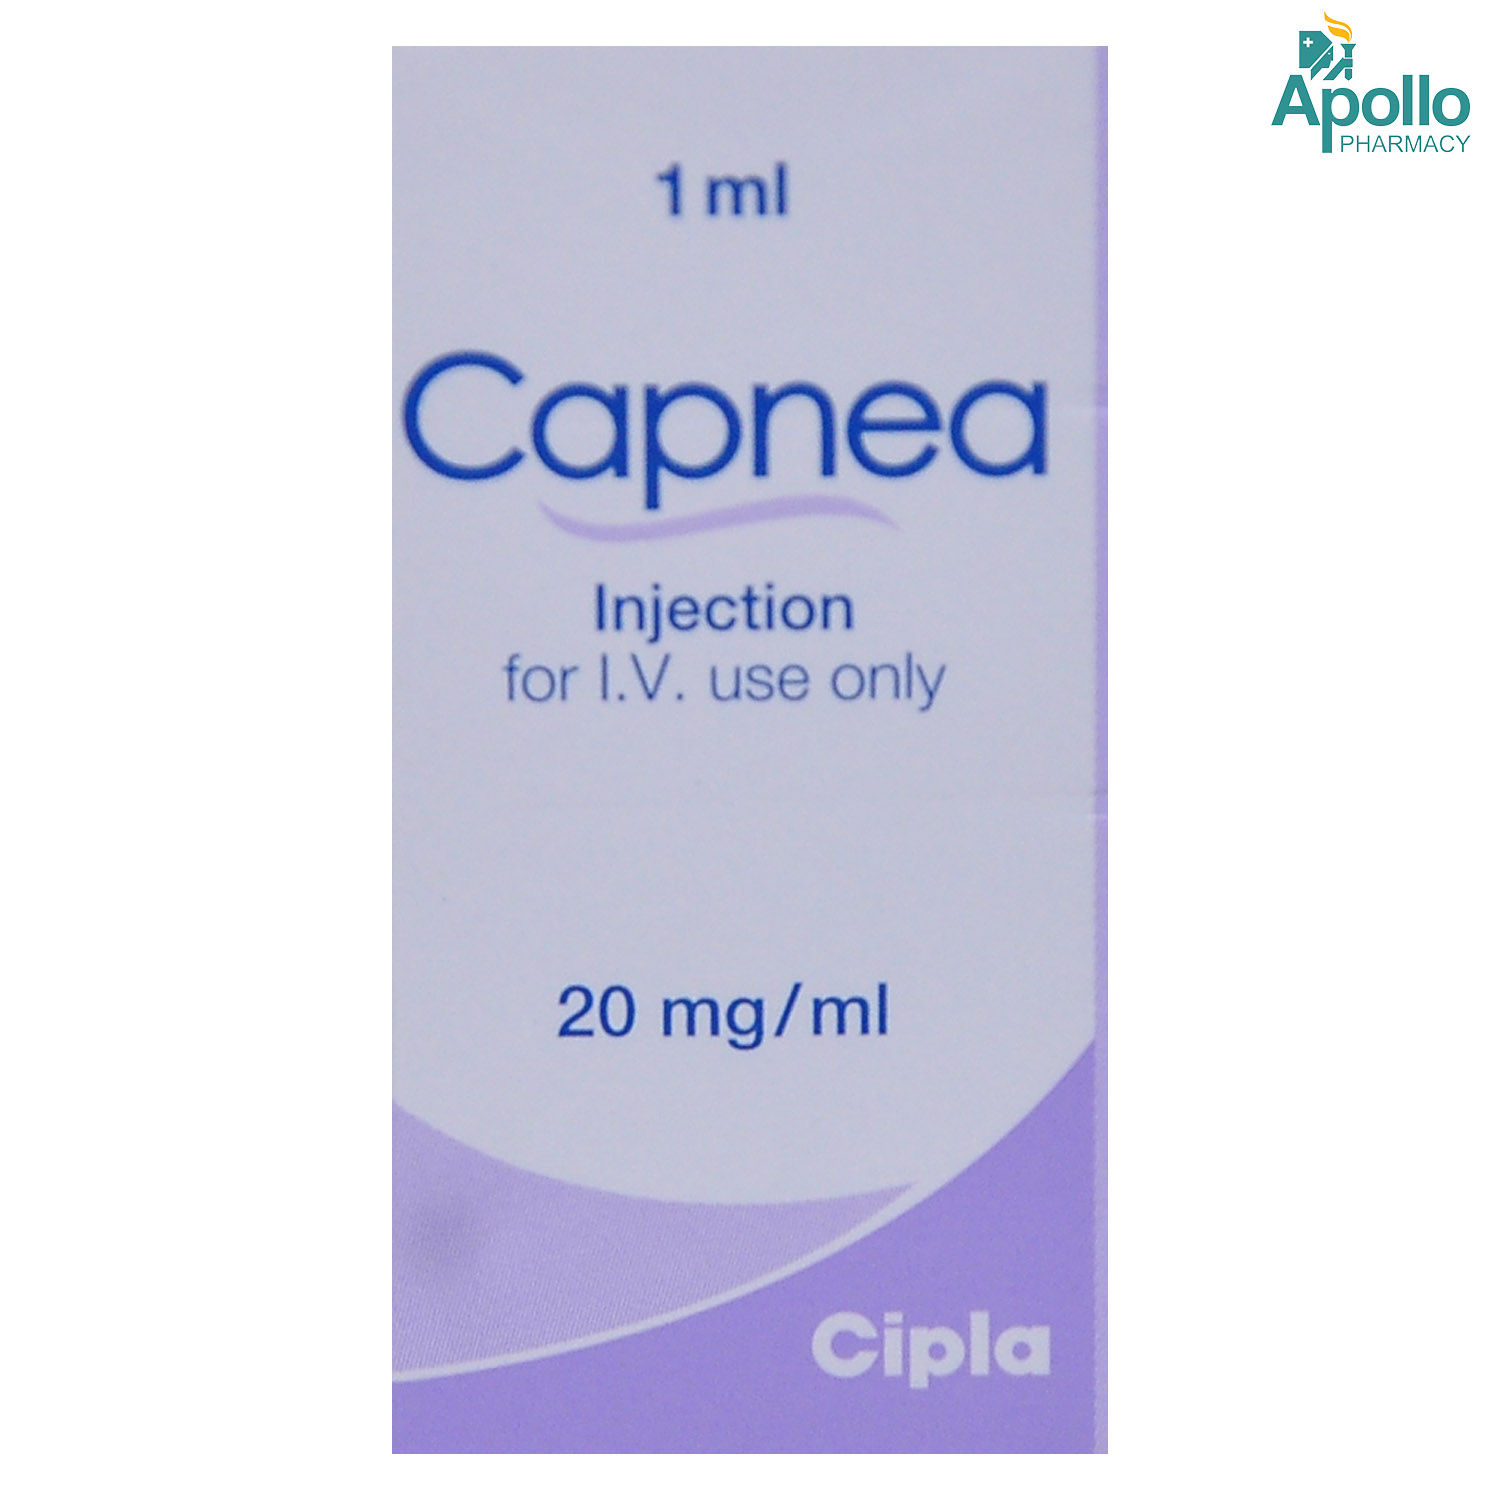 Buy Capnea Injection 1 ml Online